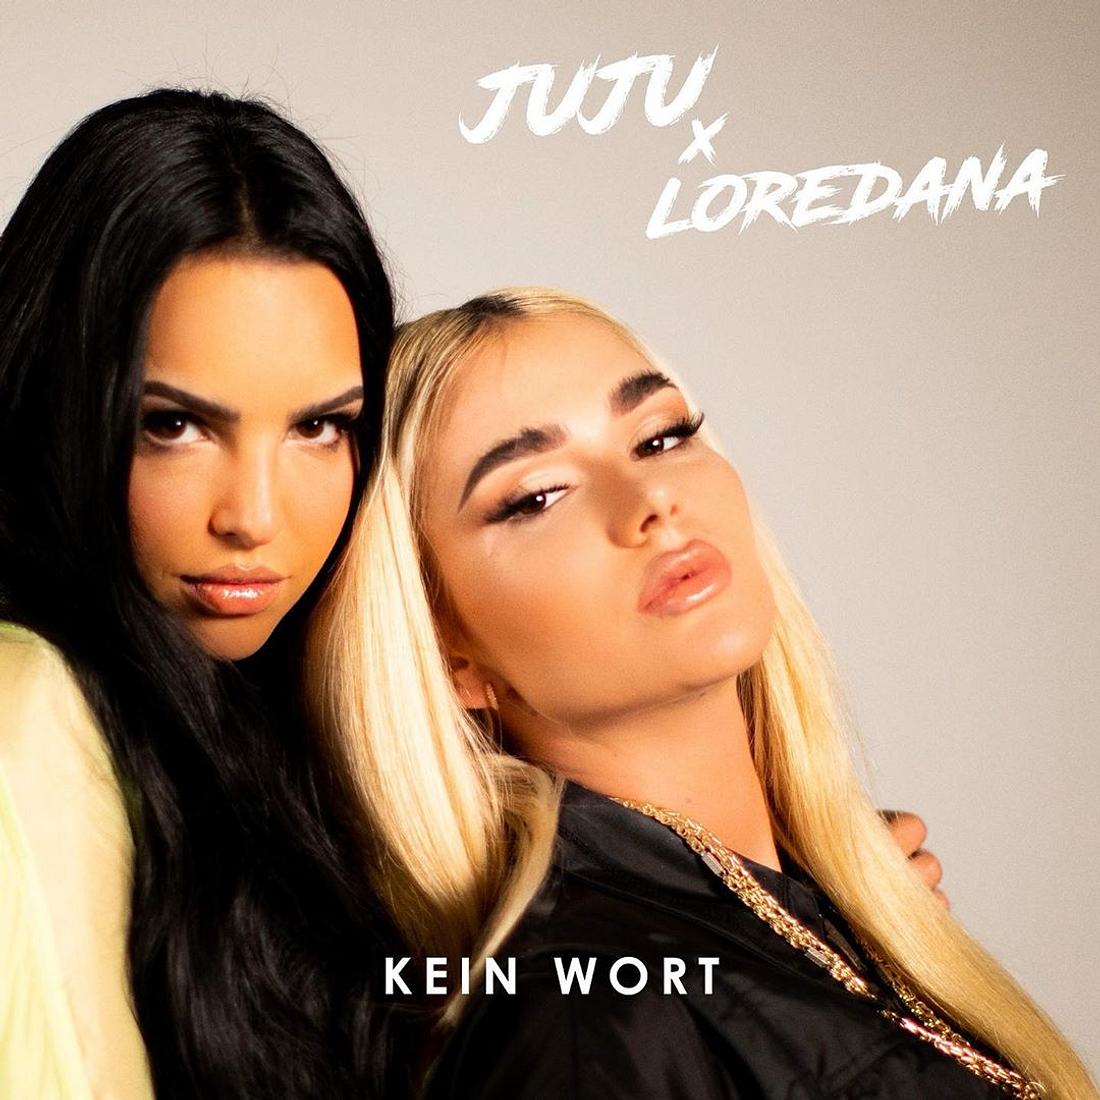 Juju & Loredana: Alle Infos zum gemeinsamen Song